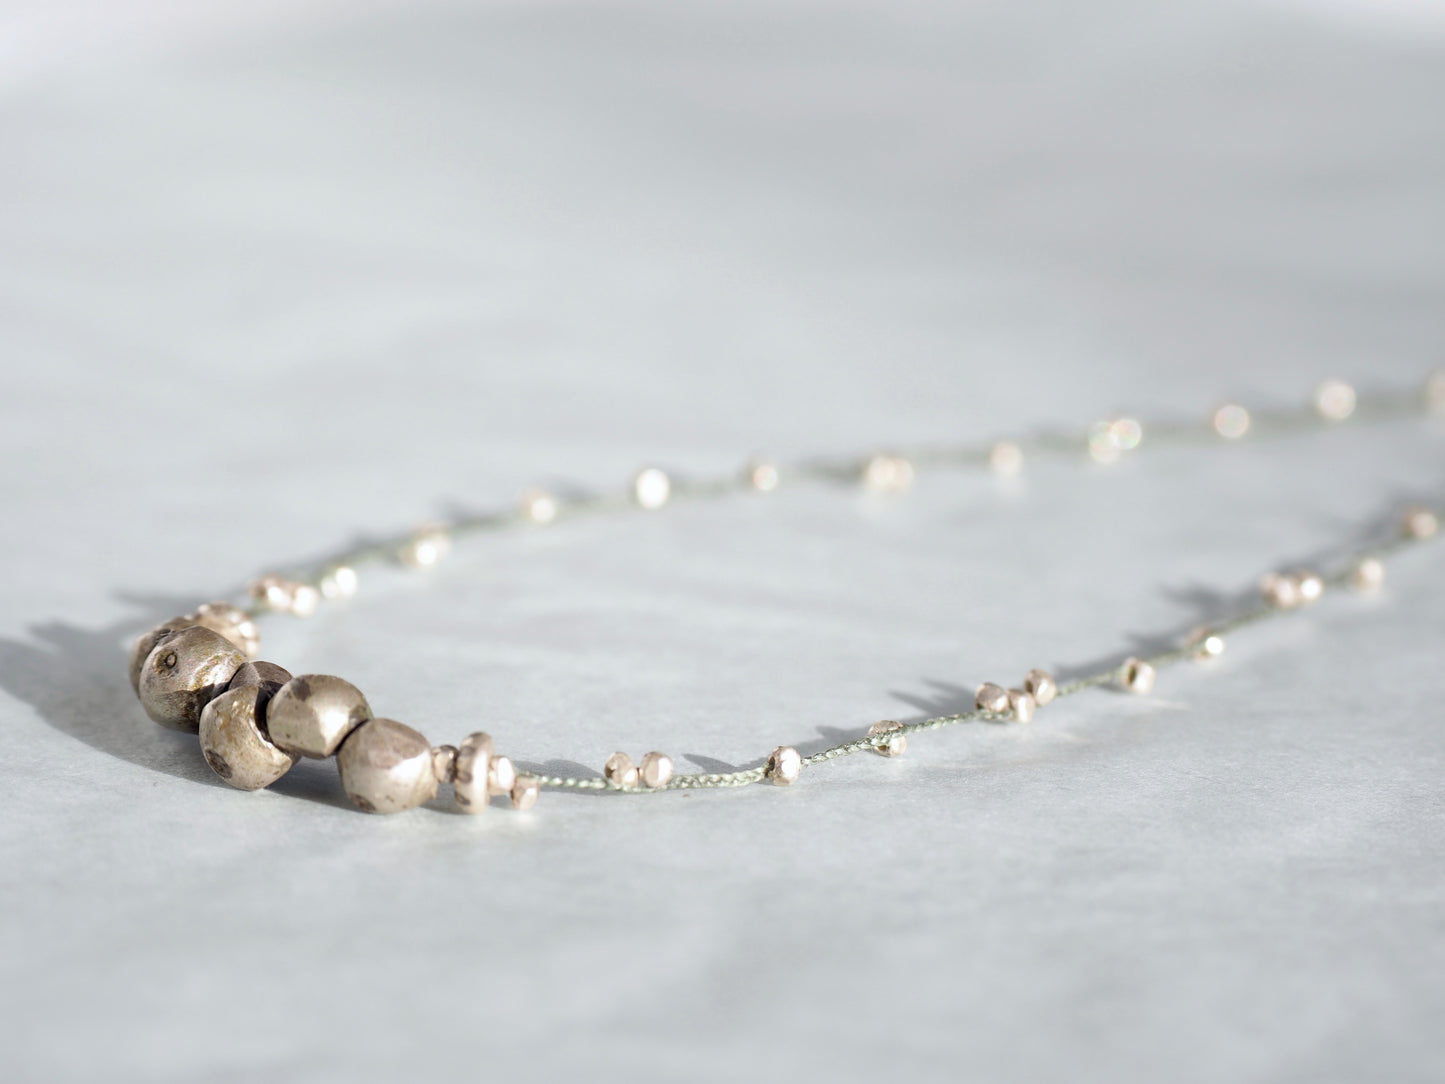 siam-silver "Ballet money" necklace